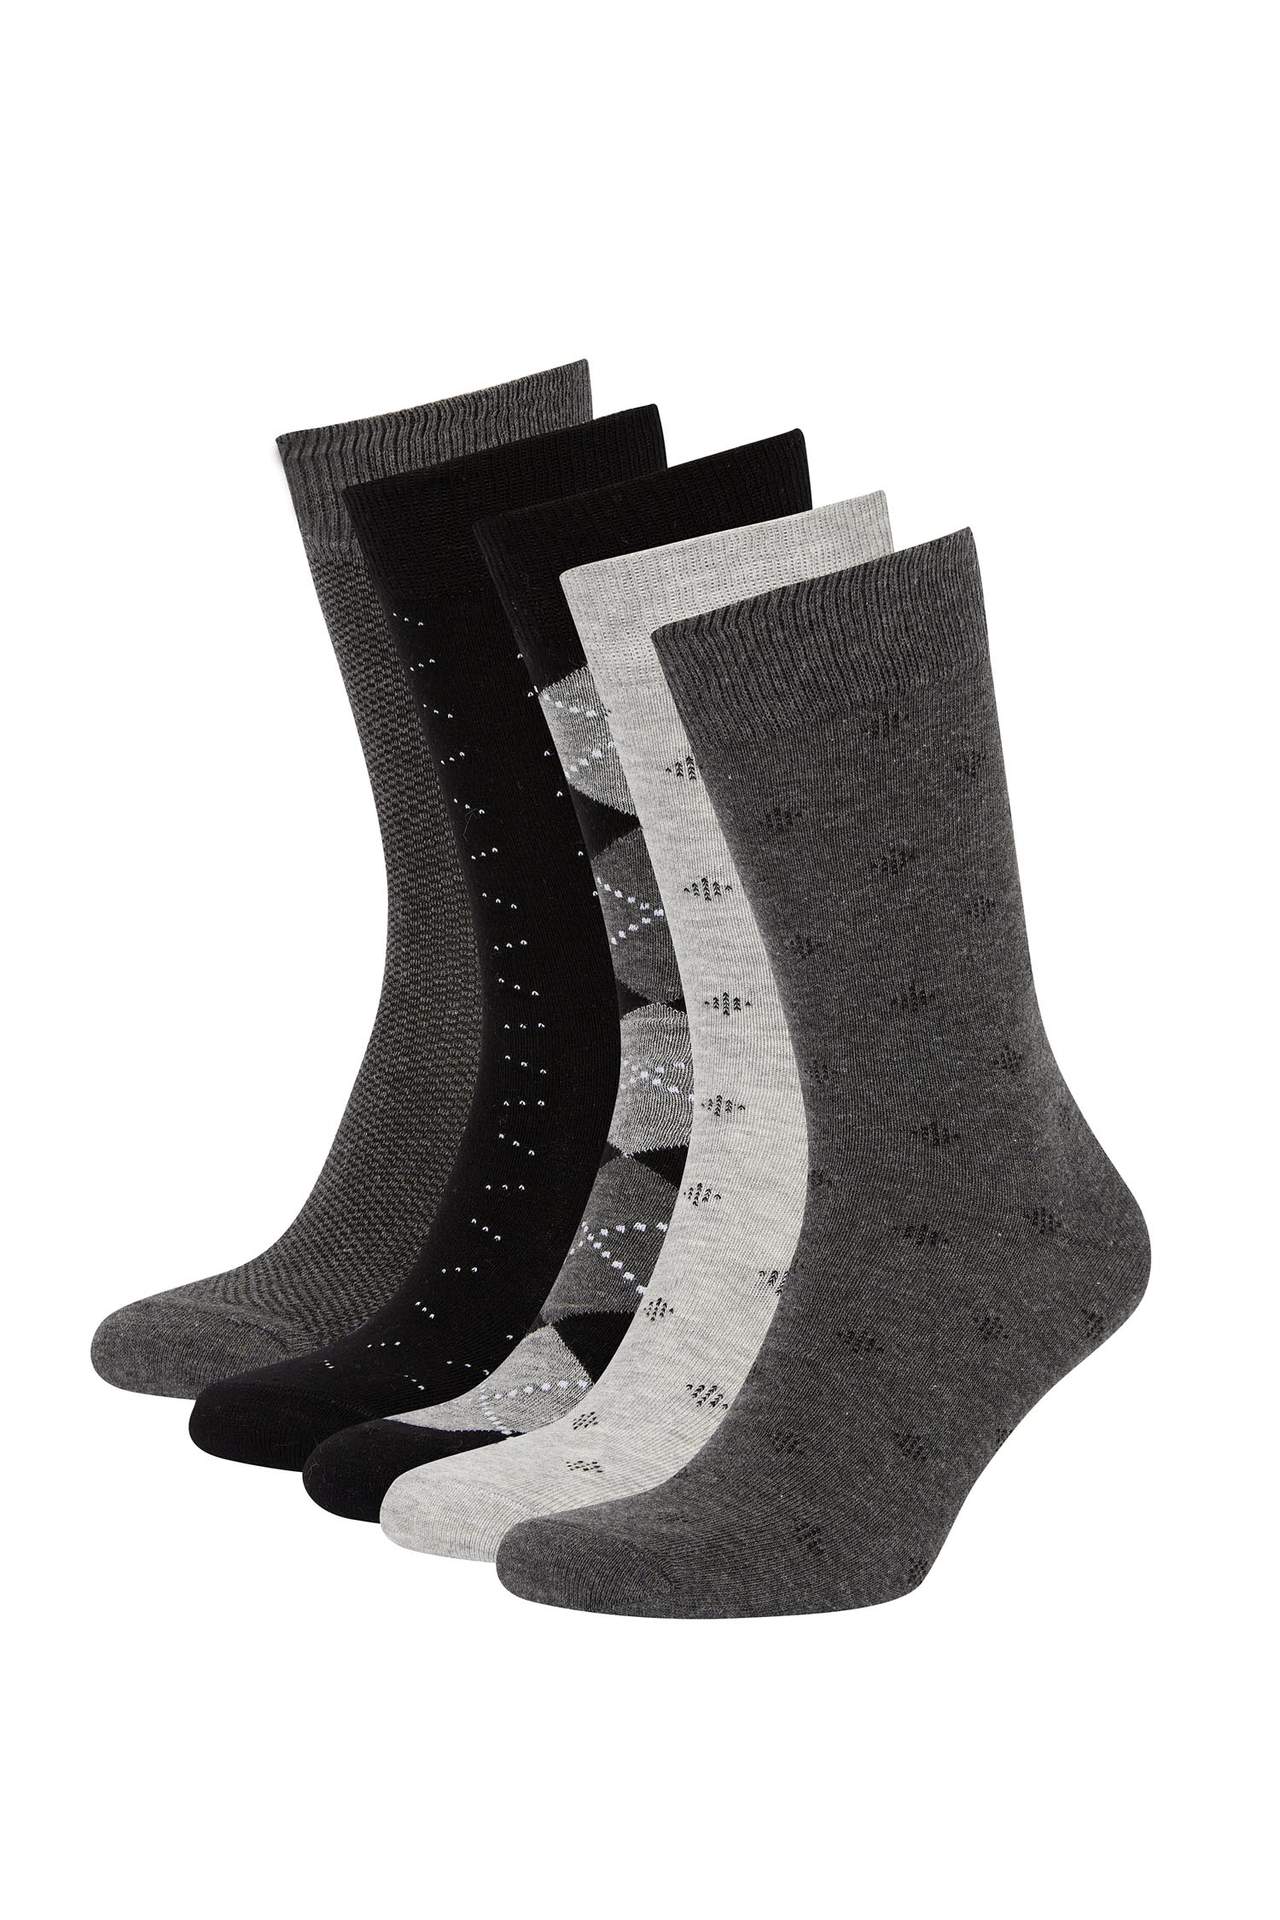 DEFACTO Men's Cotton Patterned 5-Piece Socks